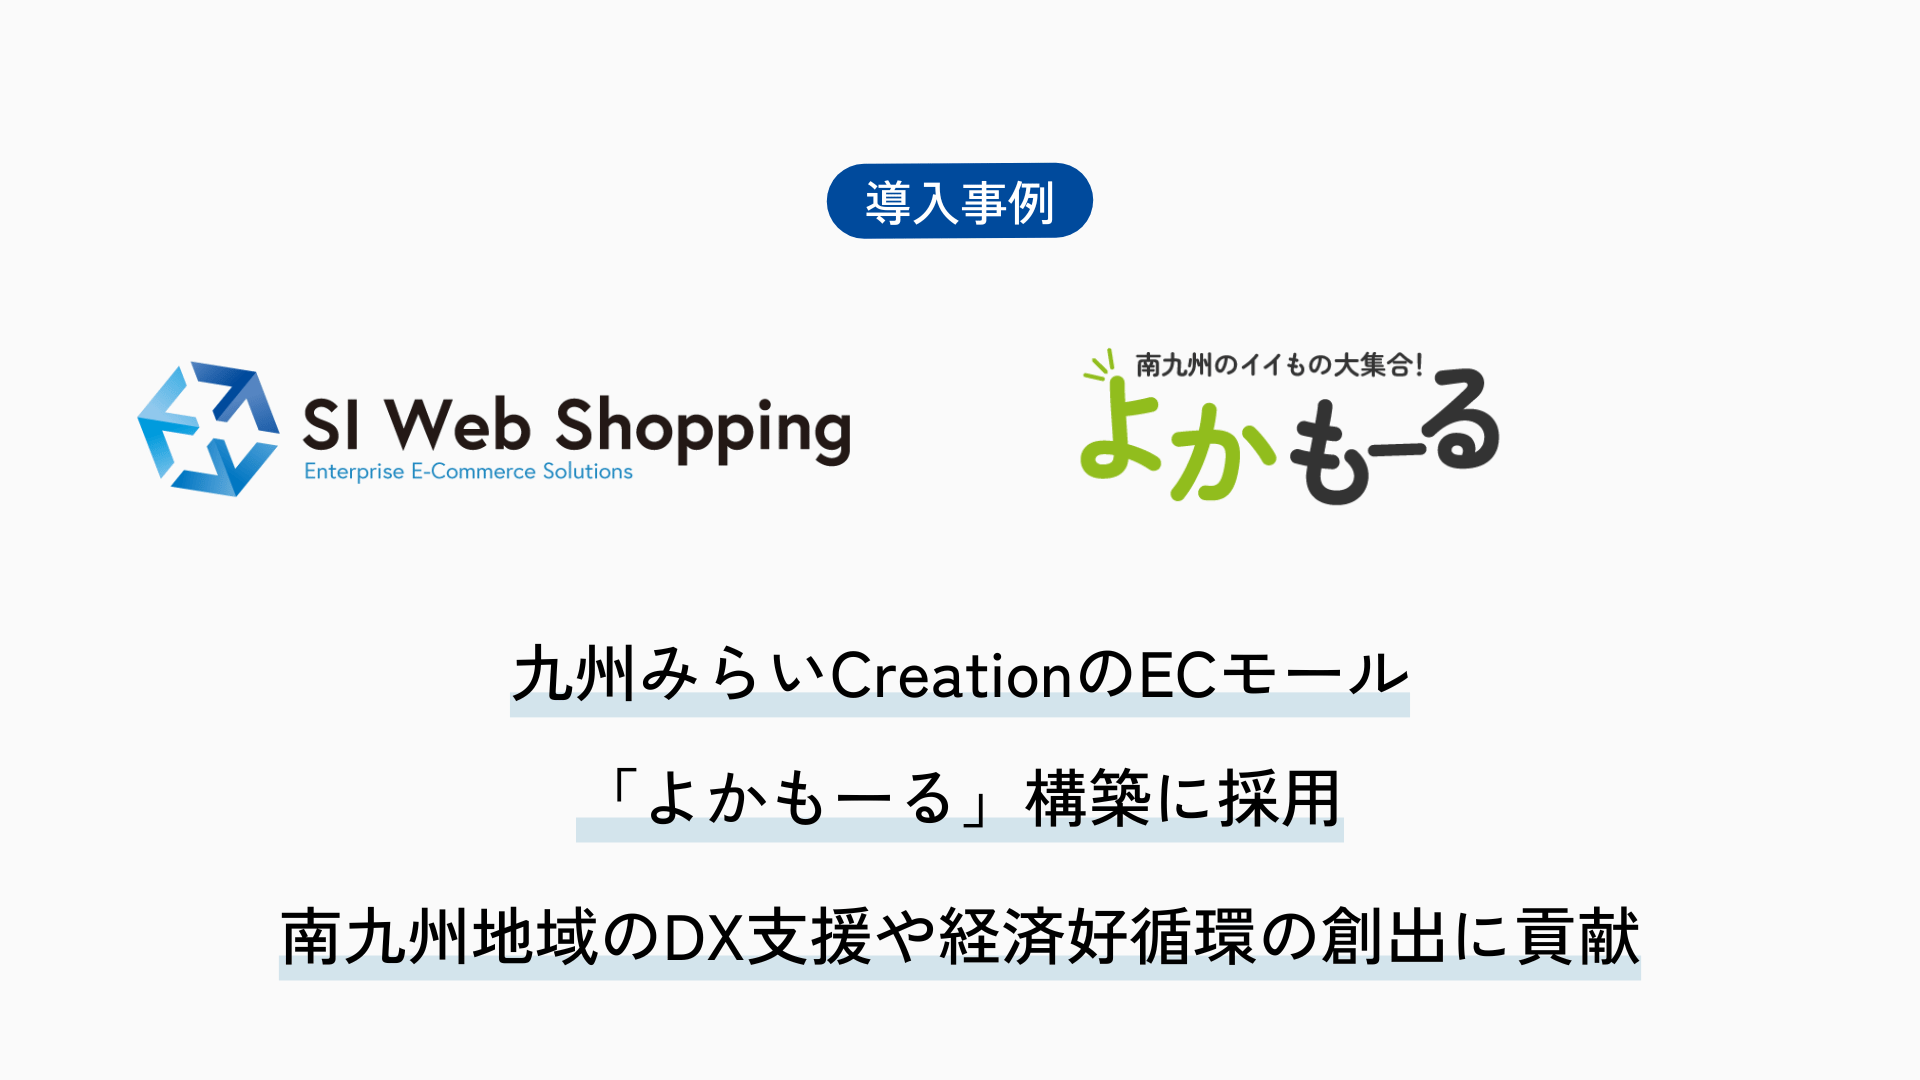 SI Web Shopping、九州みらいCreationの新事業でECモール「よかもーる」構築に採用。地域事業者と消費者をつなぐデジタルプラットフォームとして南九州地域のDX支援や経済好循環を創出